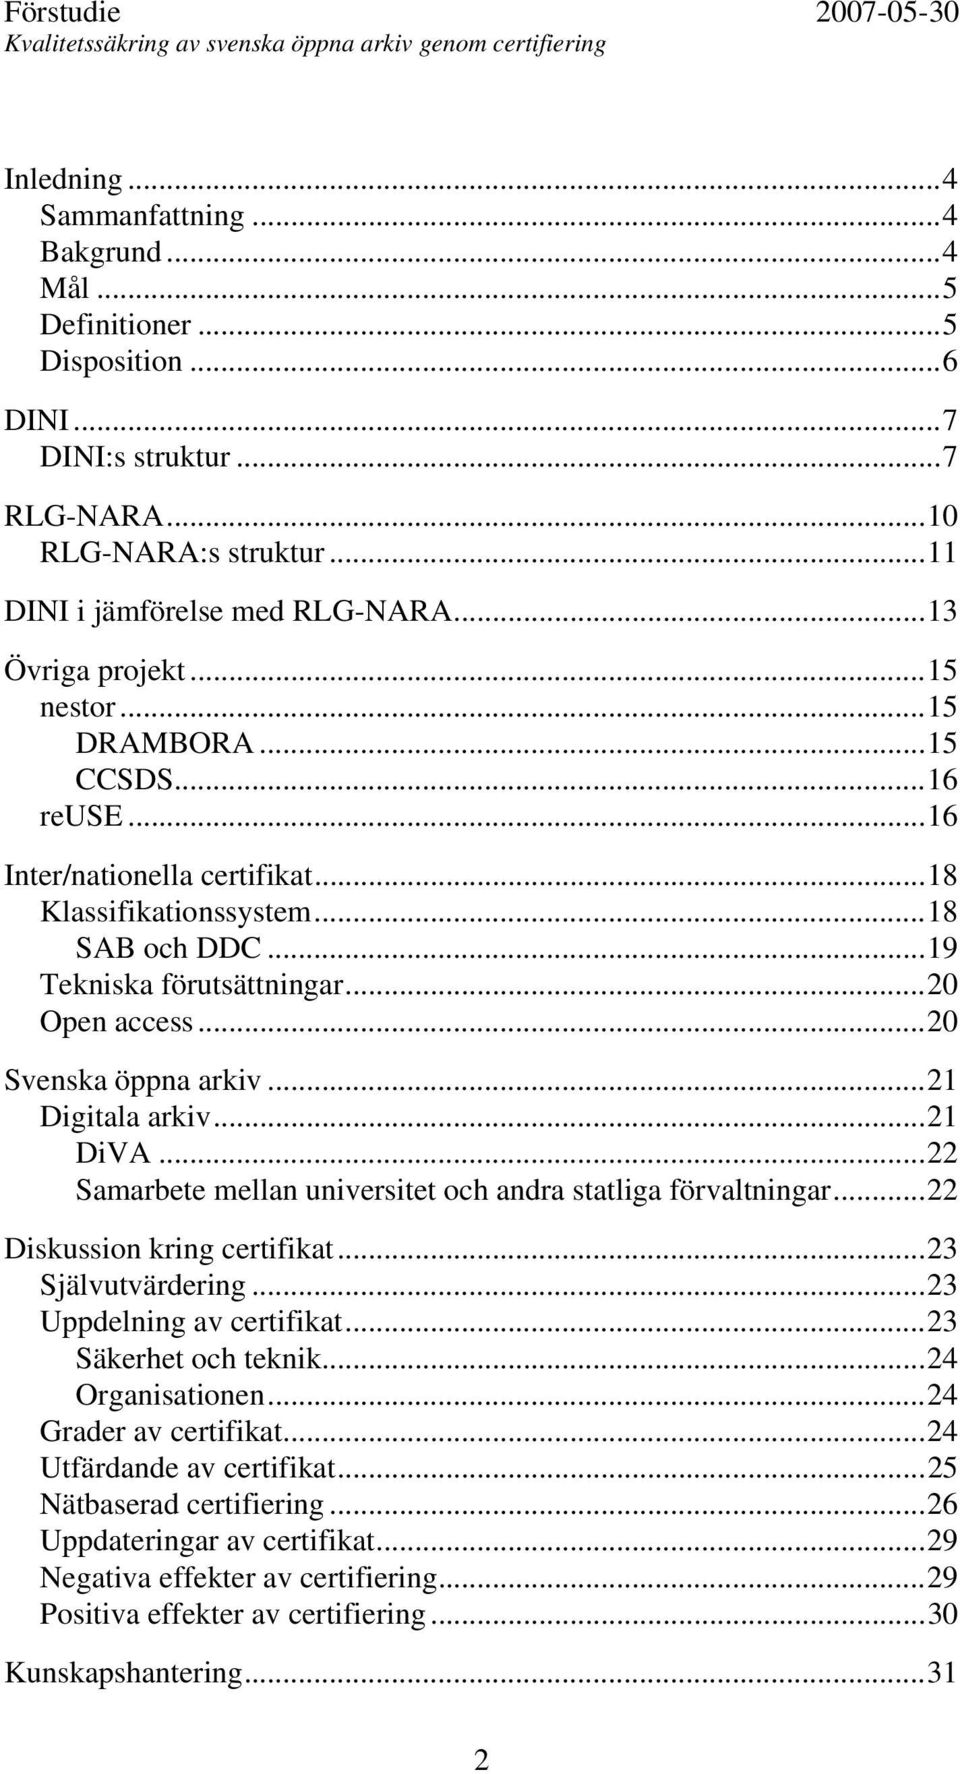 ..20 Svenska öppna arkiv...21 Digitala arkiv...21 DiVA...22 Samarbete mellan universitet och andra statliga förvaltningar...22 Diskussion kring certifikat...23 Självutvärdering.